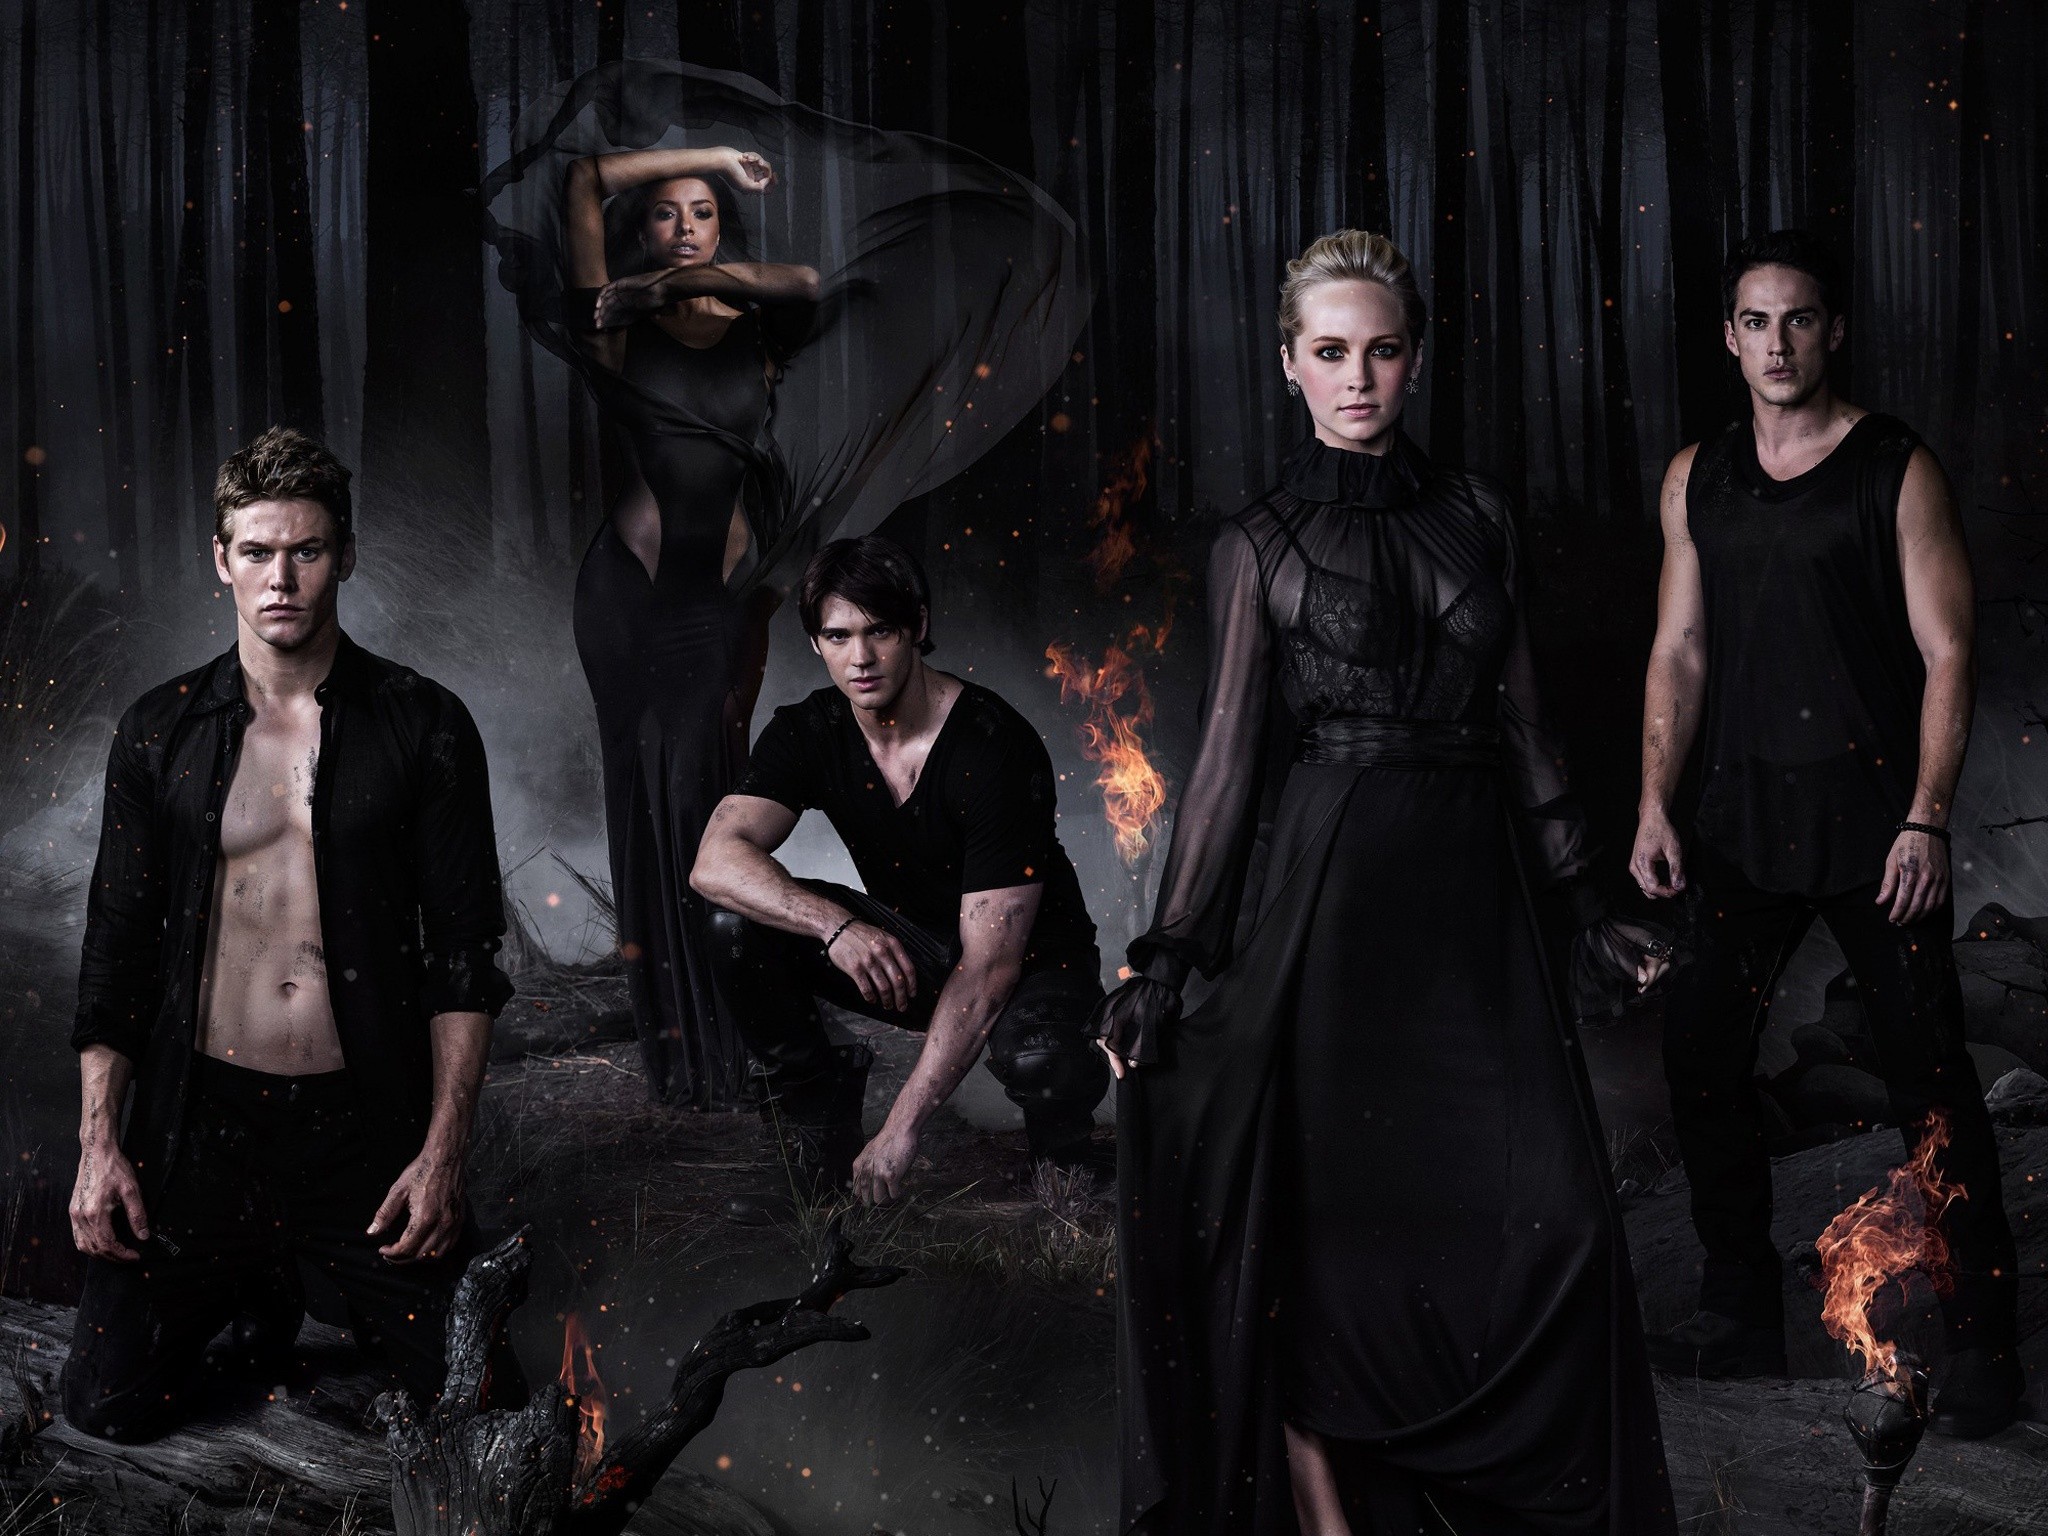 2048x1536 American Supernatural Drama The Vampire Diaries – Season 5 wallpaper